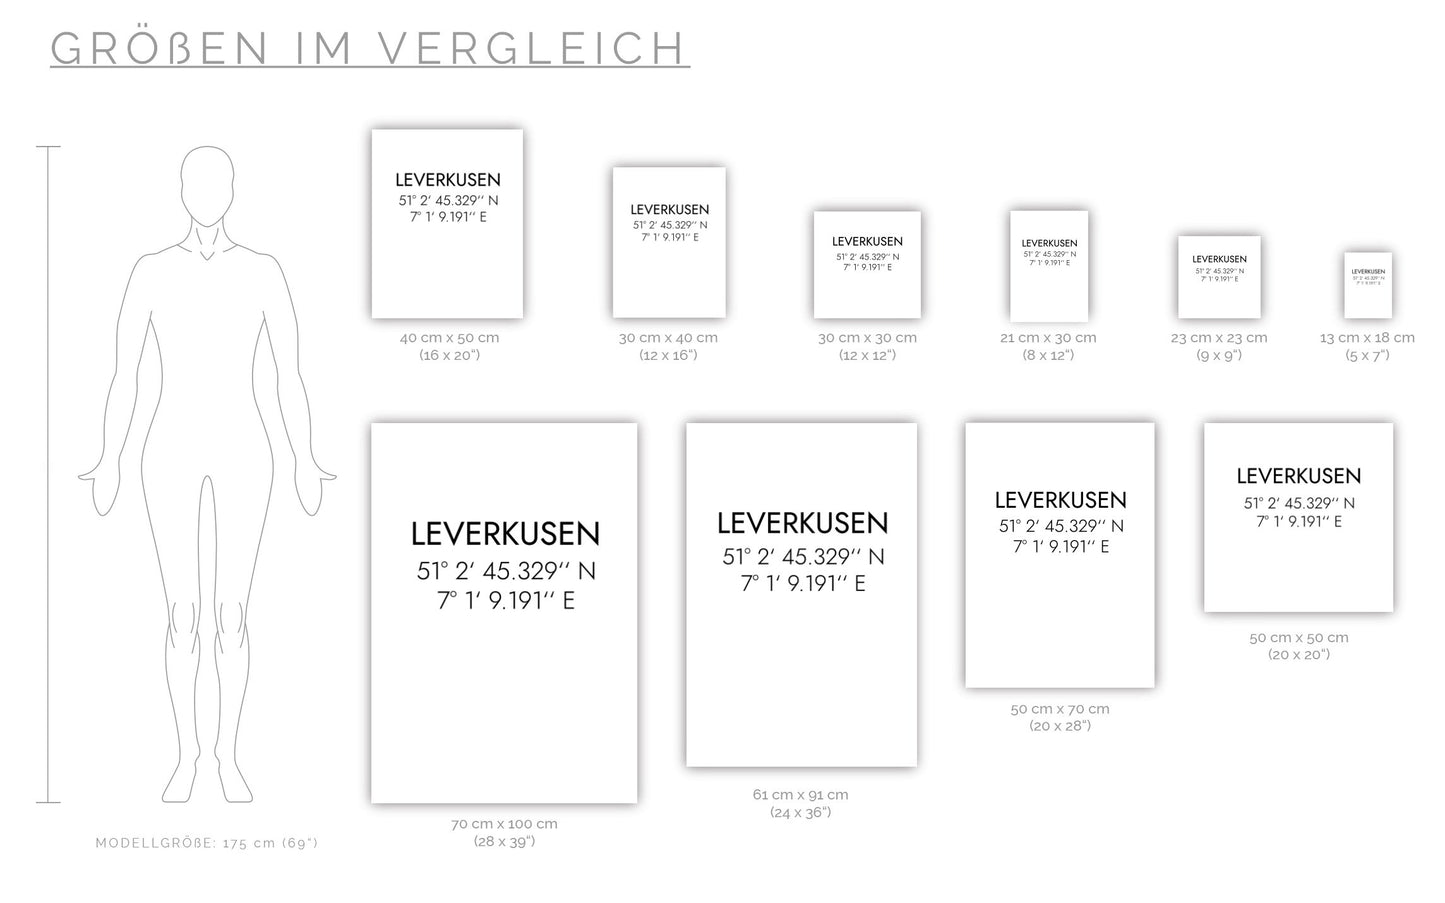 Poster Leverkusen Koordinaten #1